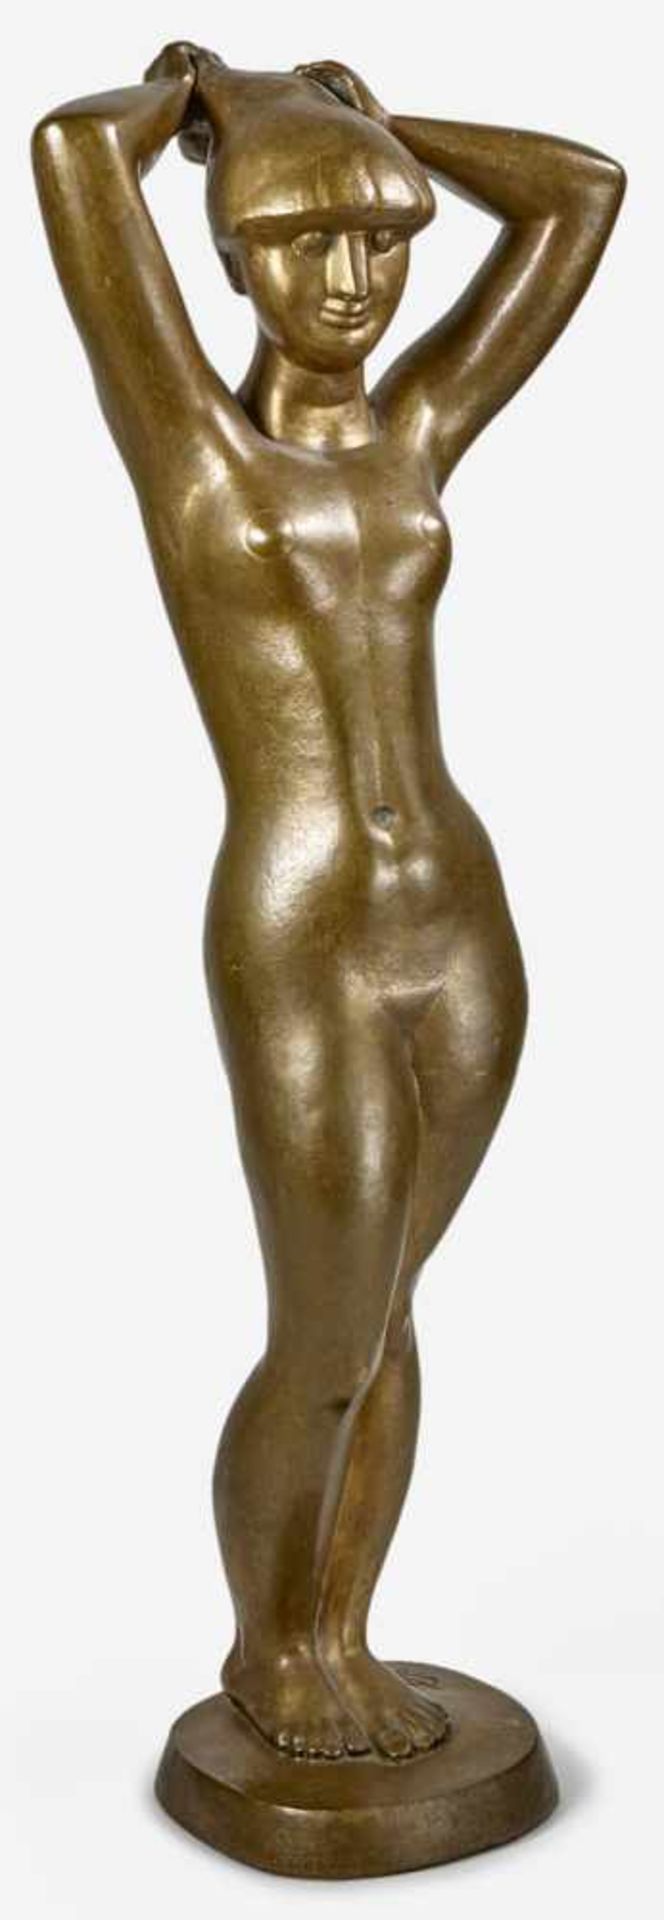 Ewel, Gerd: EvaEvaBronze mit goldbrauner Patina. 1965.51 x 18 x 10 cm.Auf der Bronzeplinthe rechts